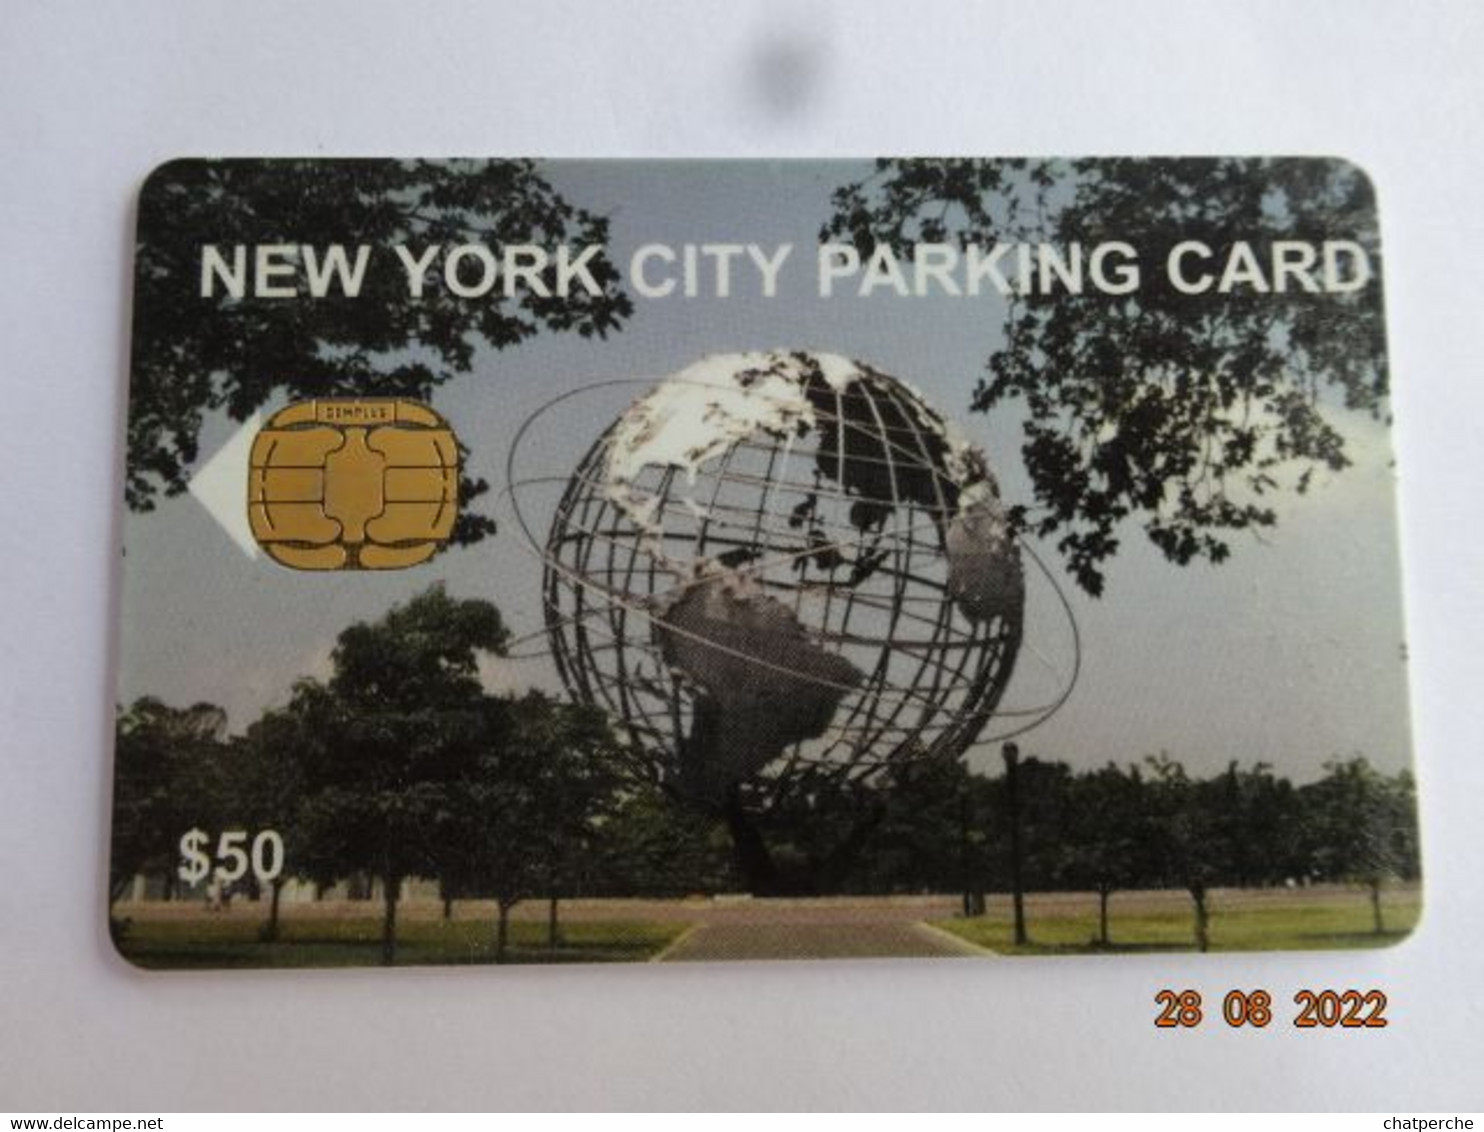 CARTE A PUCE PARKING SMARTCARD SMART CARD TARJETTA CARTE STATIONNEMENT ETATS-UNIS NEW-YORK CITY 50 $ VARIANTE SUR PUCE - [2] Chip Cards